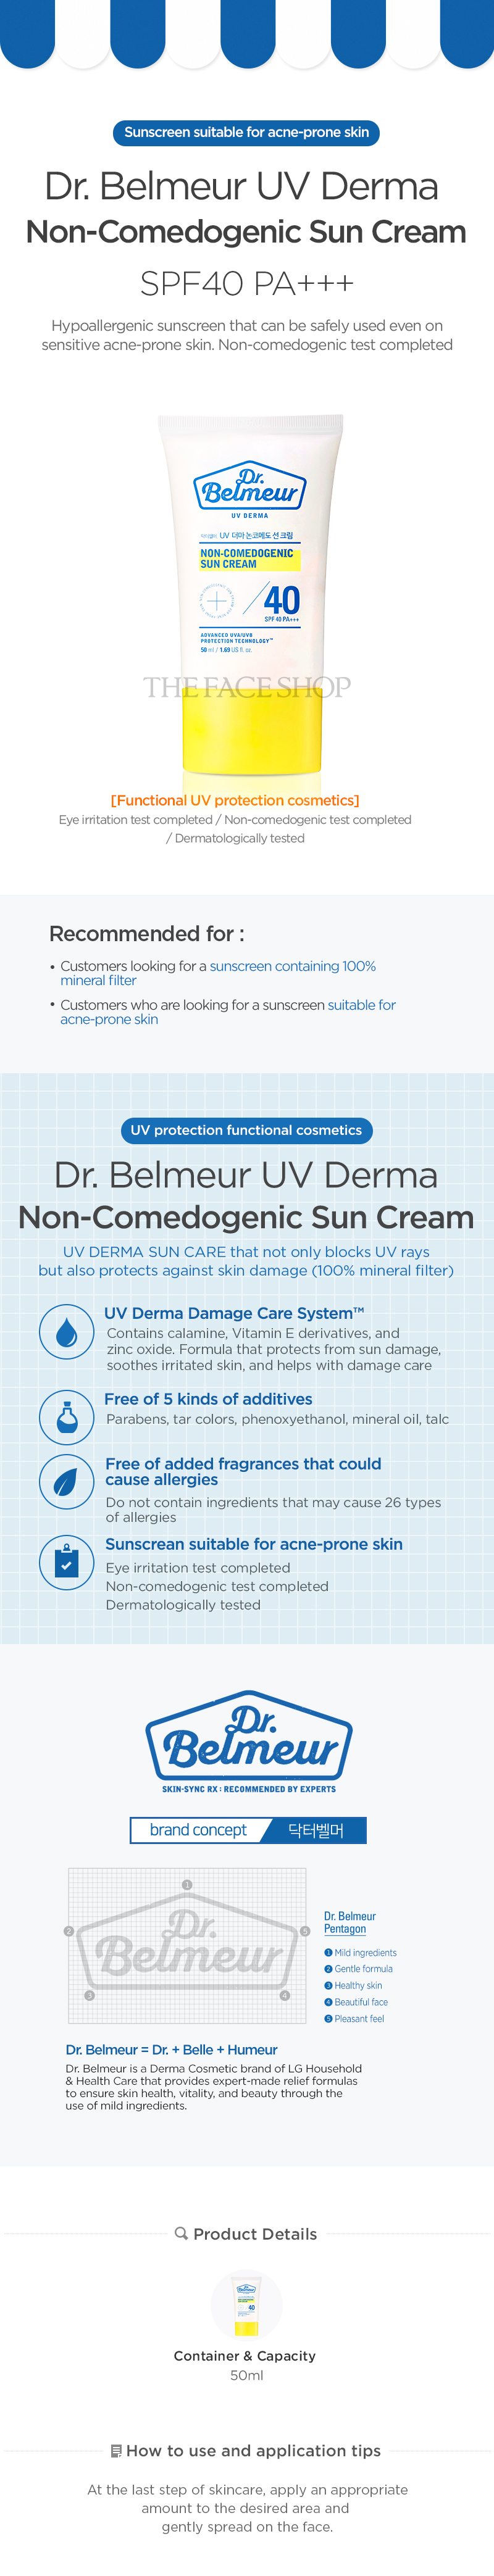 Dr Belmeur Non-Comedogenic Sun Cream SPF40+++